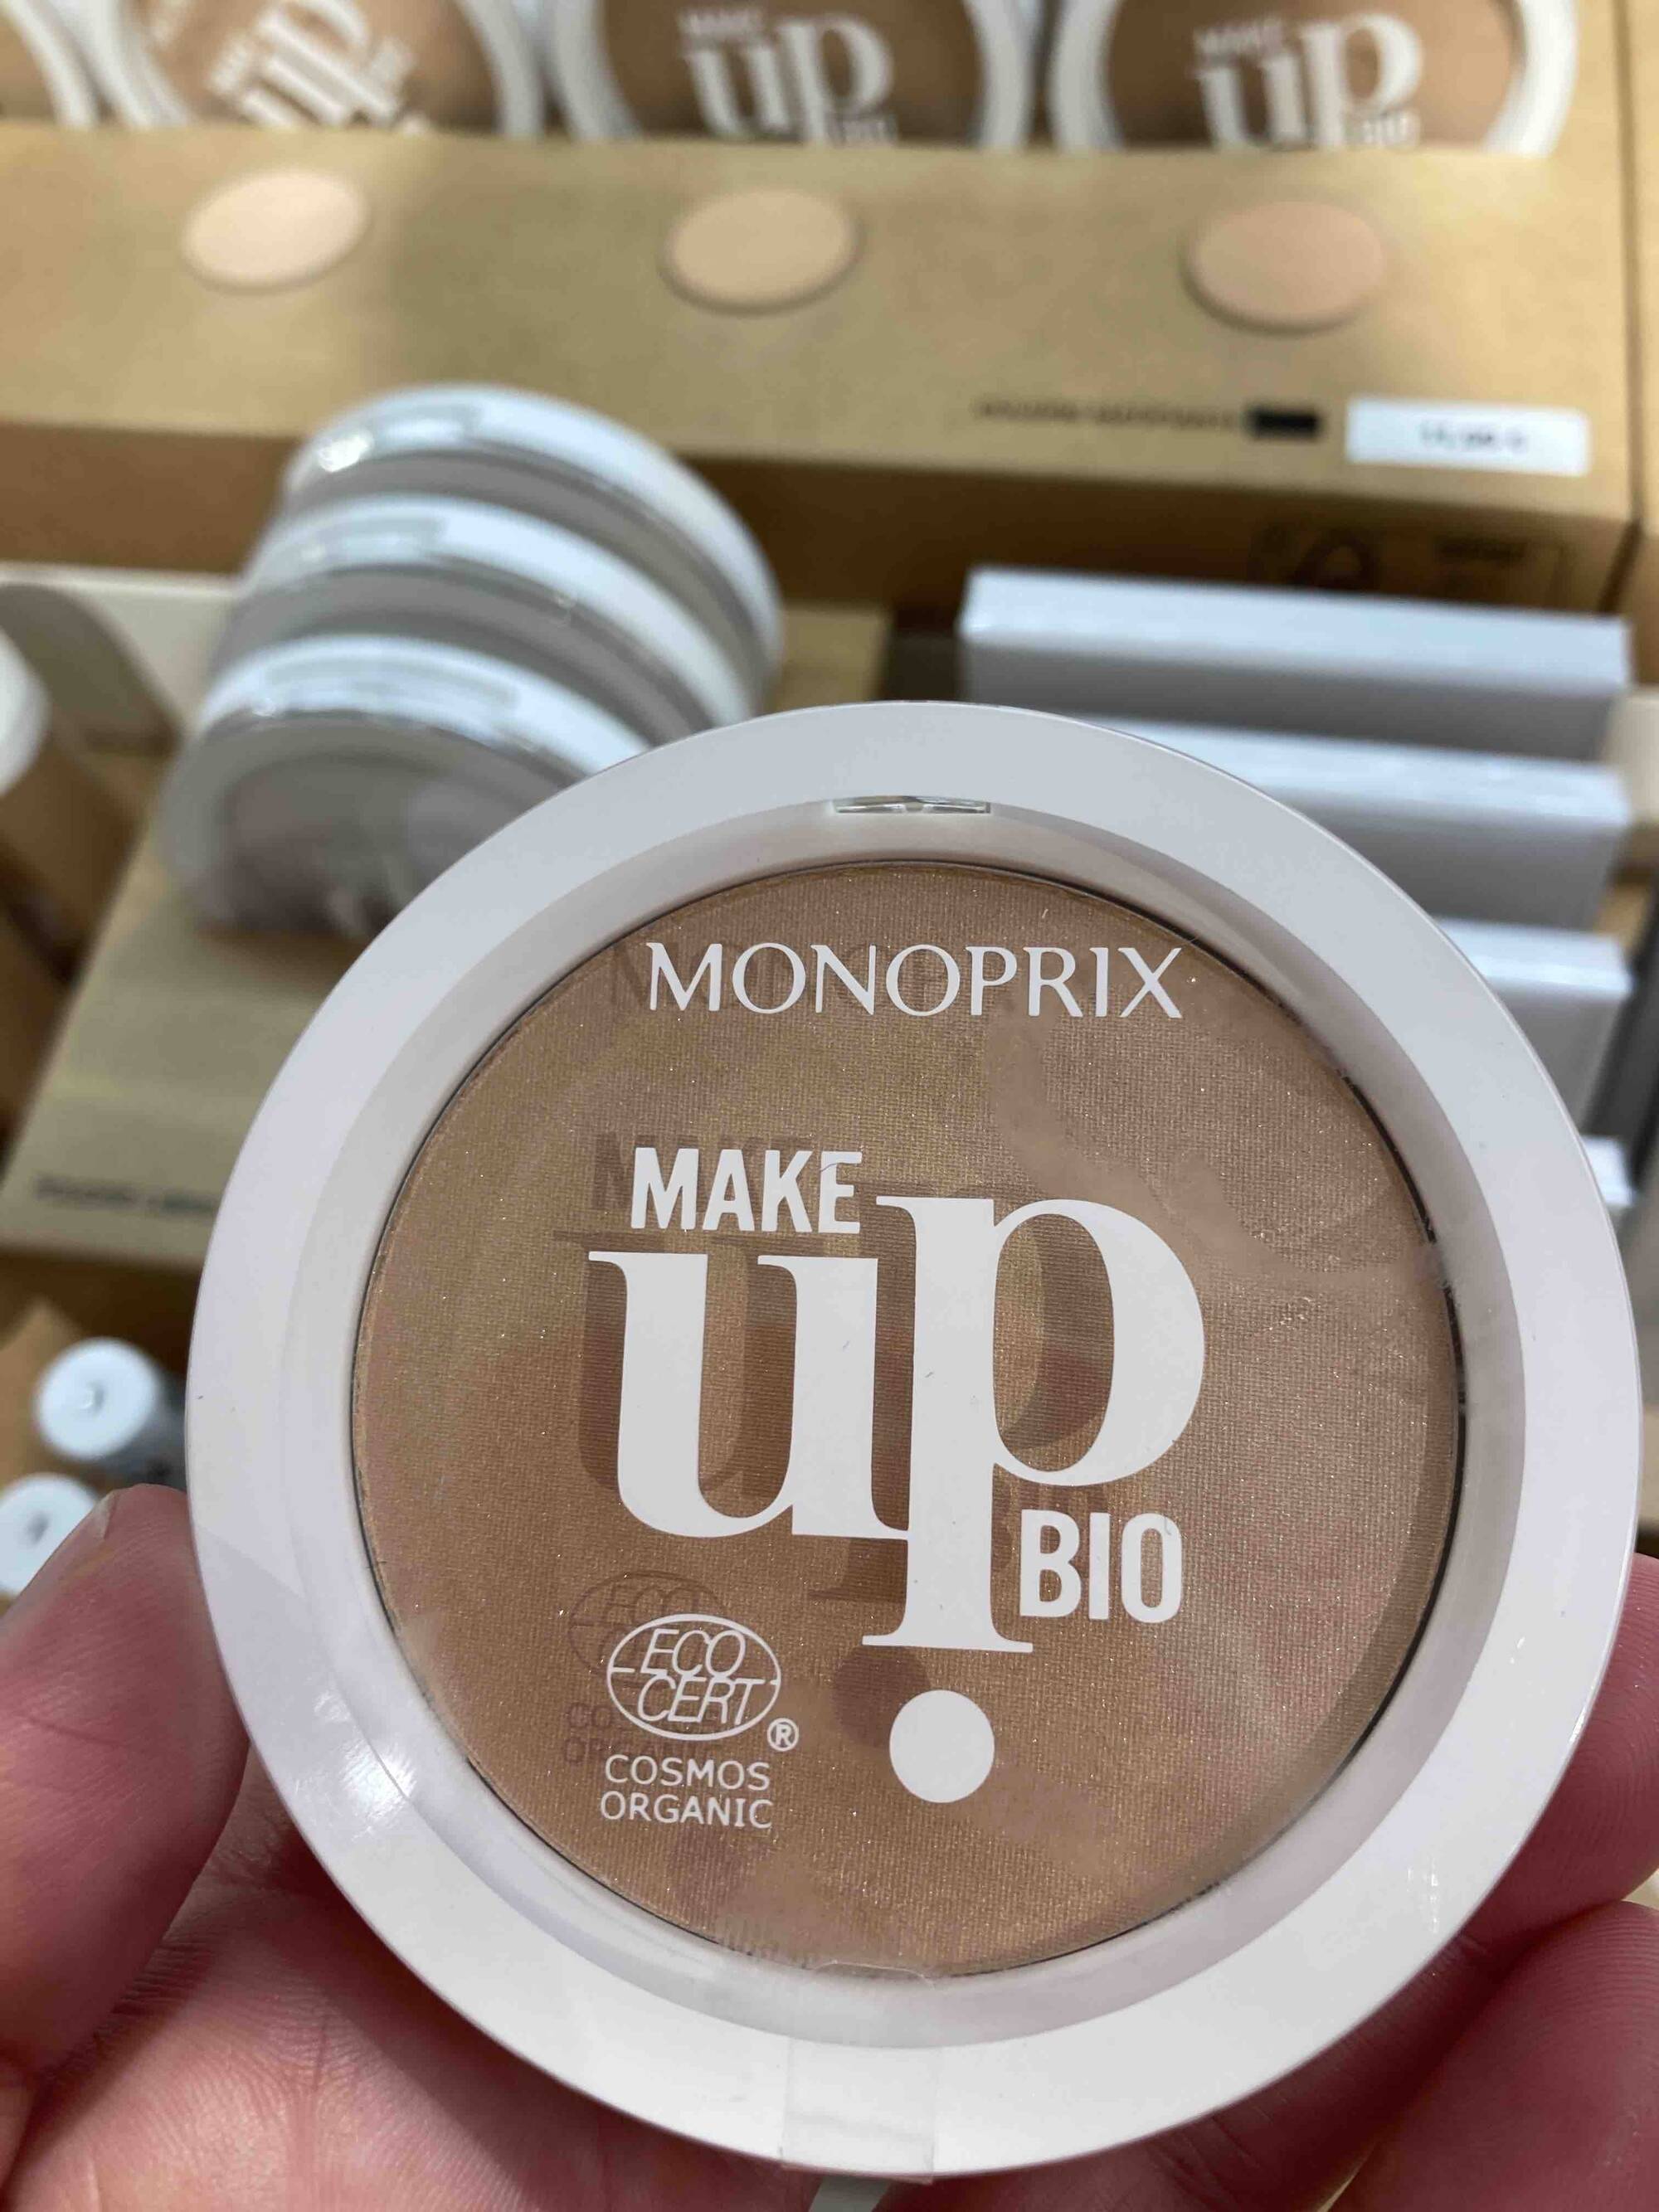 MONOPRIX - Make up bio - Enlumineur voile de nacre